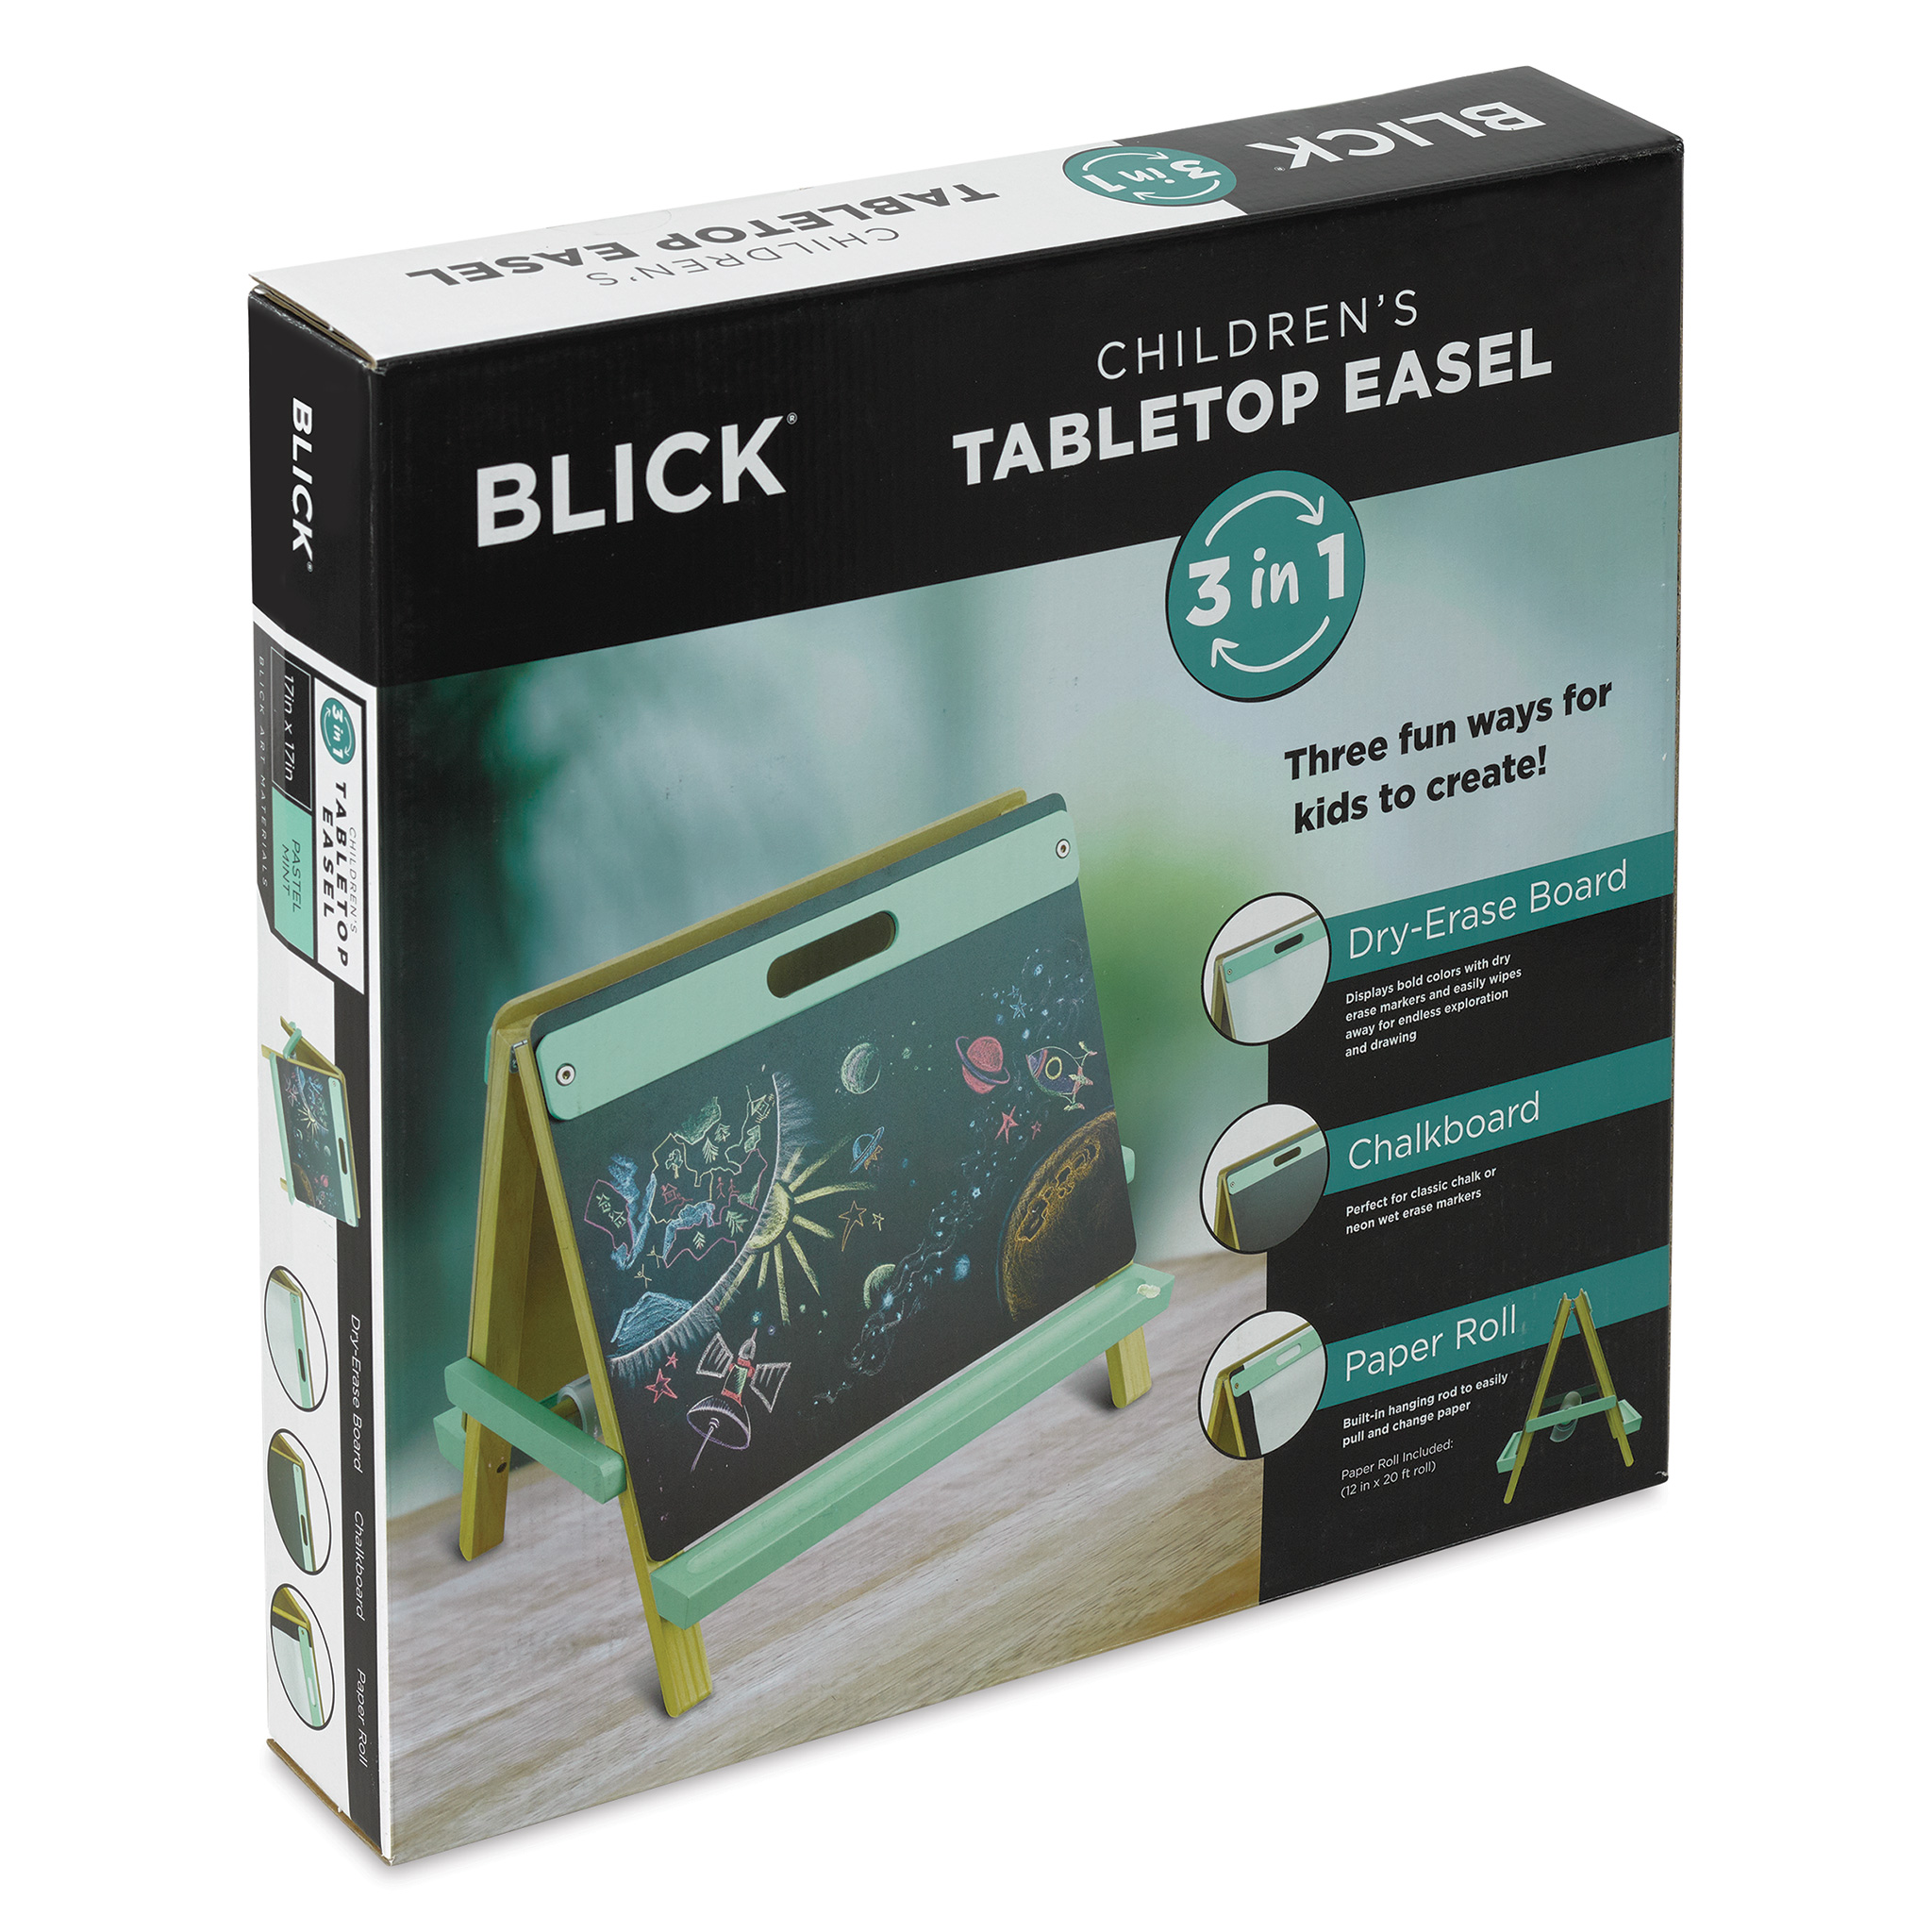 Blick Studio Children's Tabletop Easel